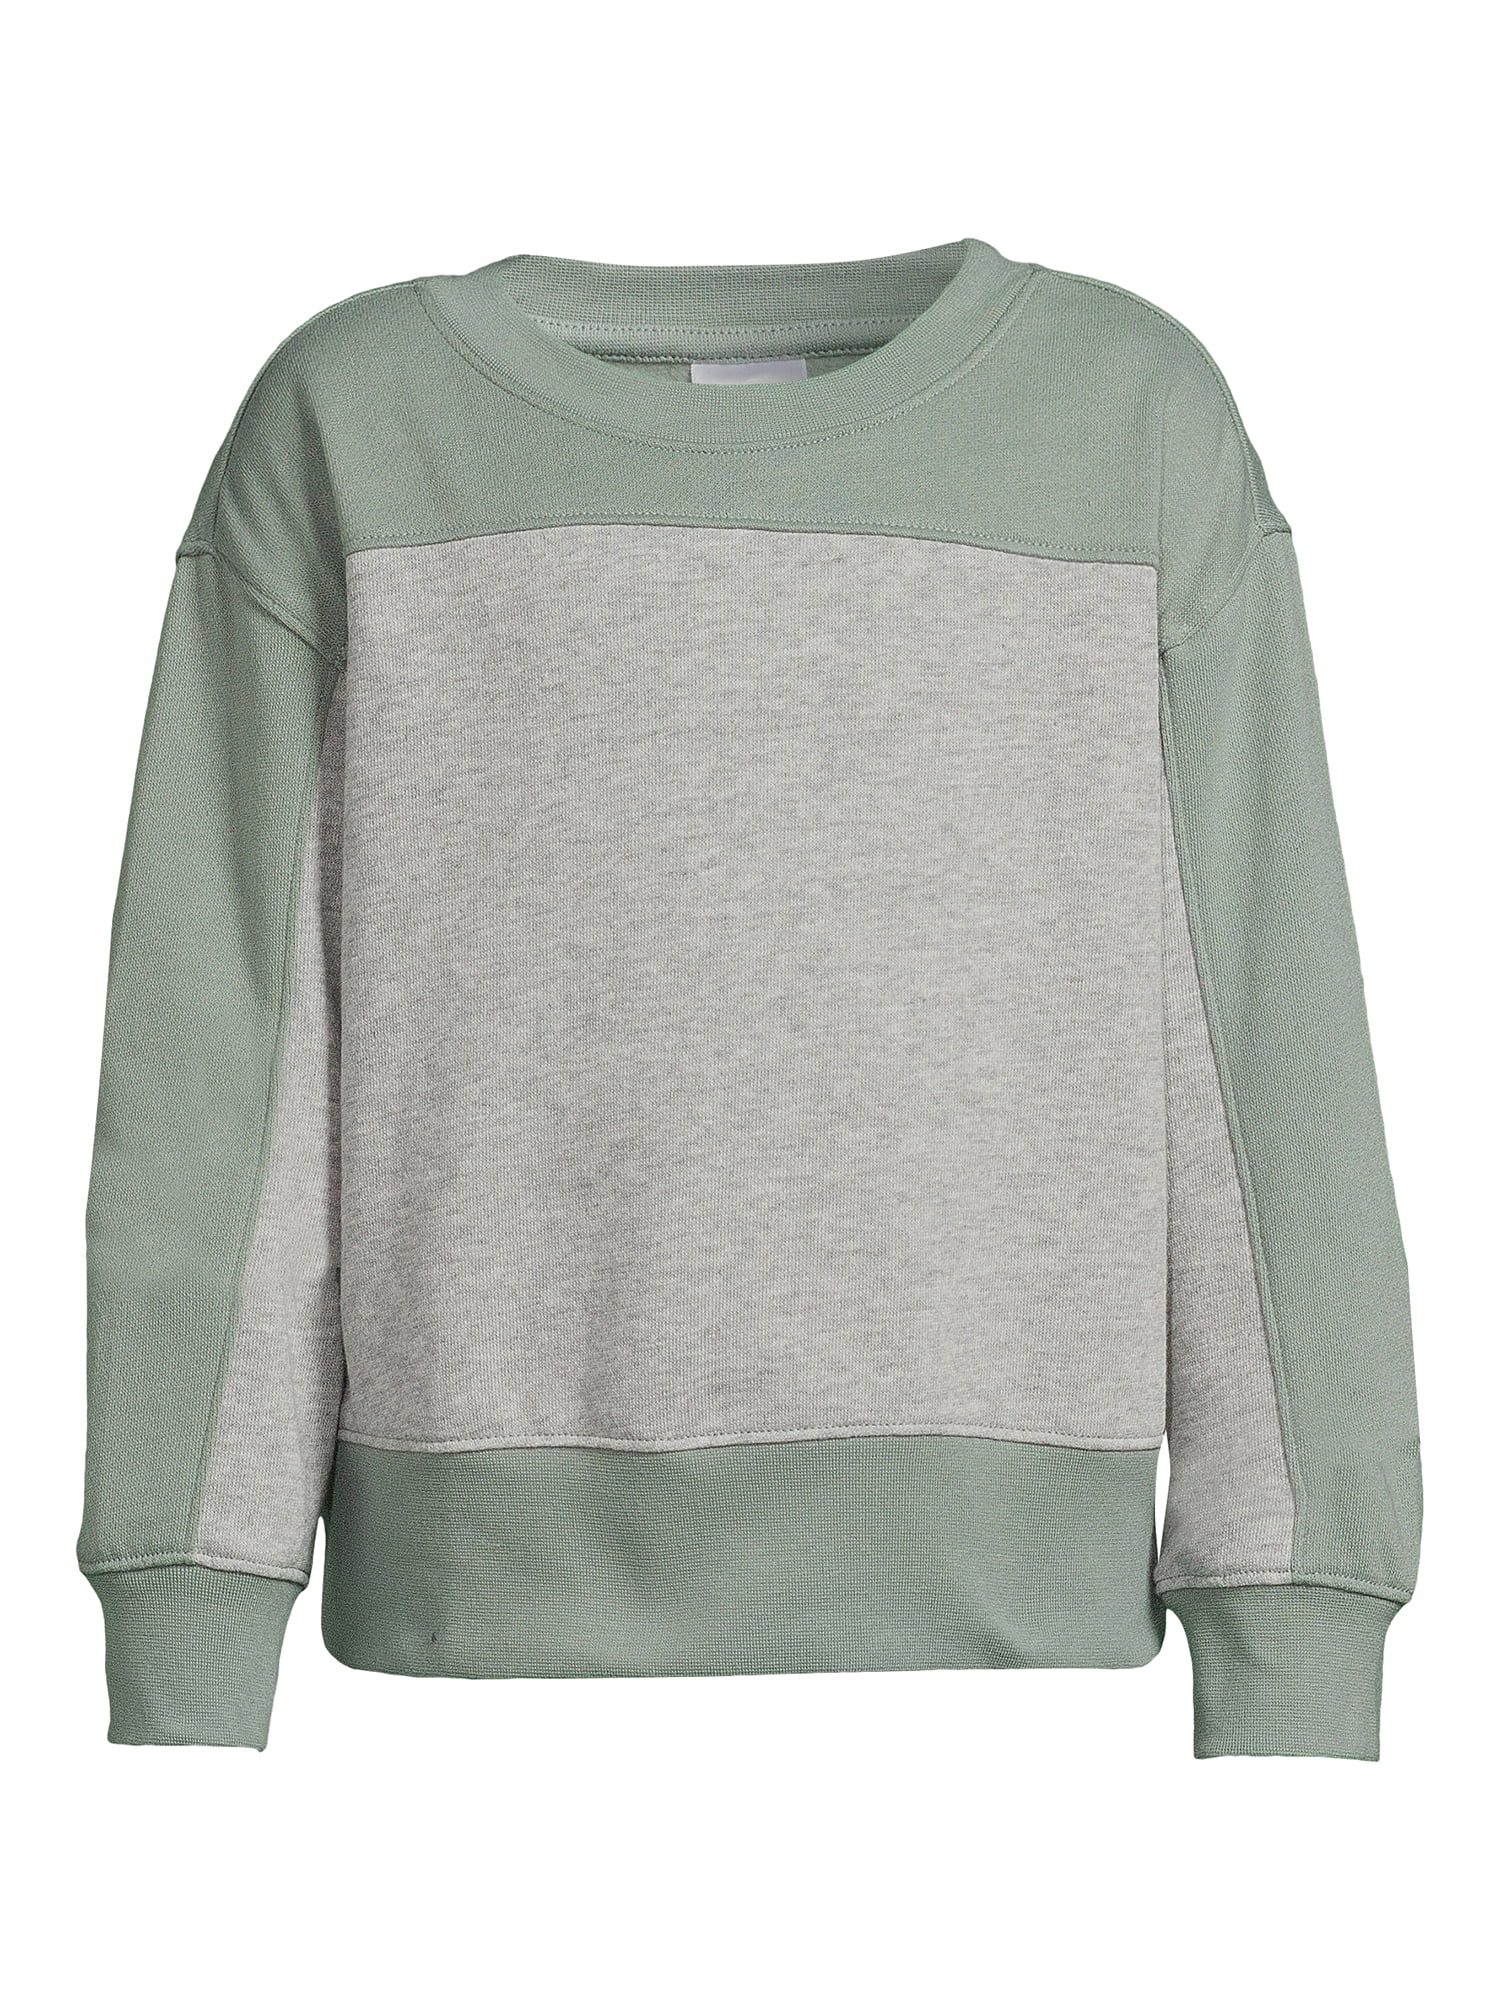 Athletic Works Girls Fleece Sweatshirt, Sizes 4-18 & Plus